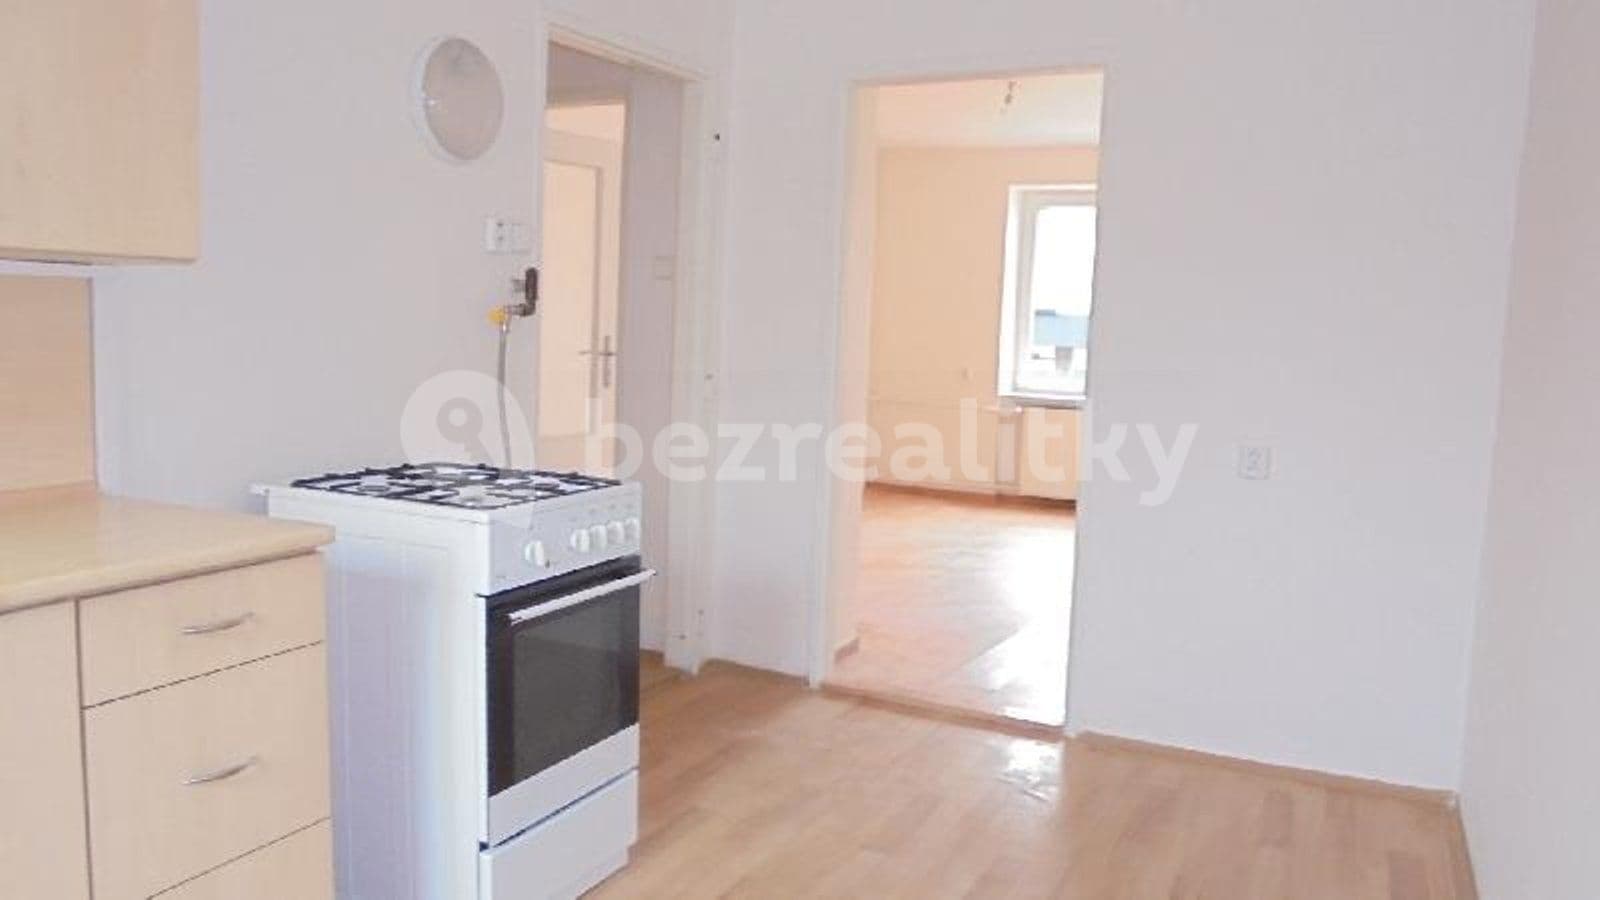 1 bedroom flat to rent, 42 m², Smetanova, Havířov, Moravskoslezský Region